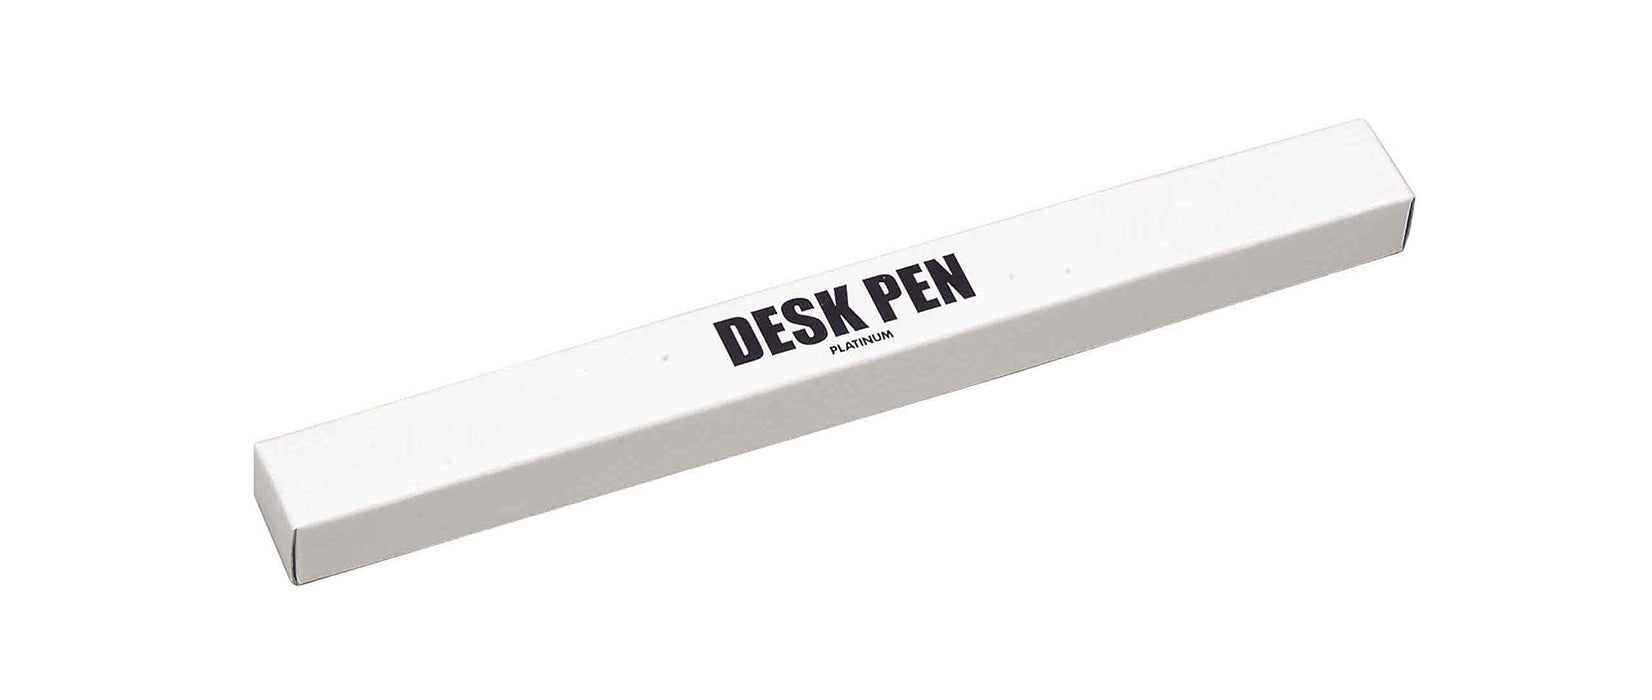 鉑金鋼筆和黑色原子筆 0.7 毫米油性 DB-1000A#1